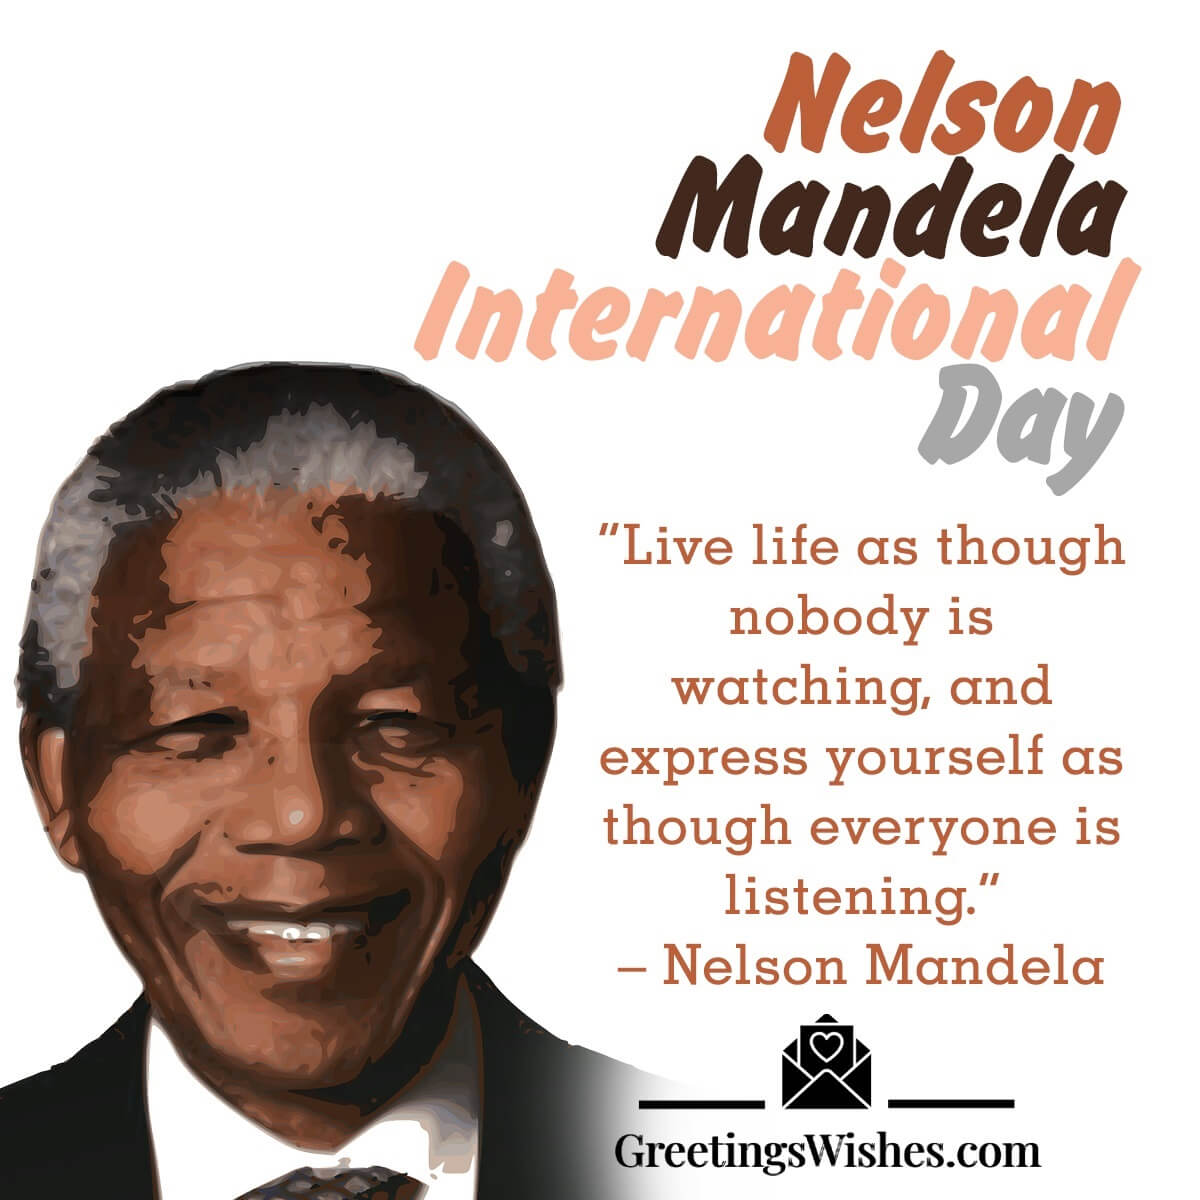 Nelson Mandela International Day Image